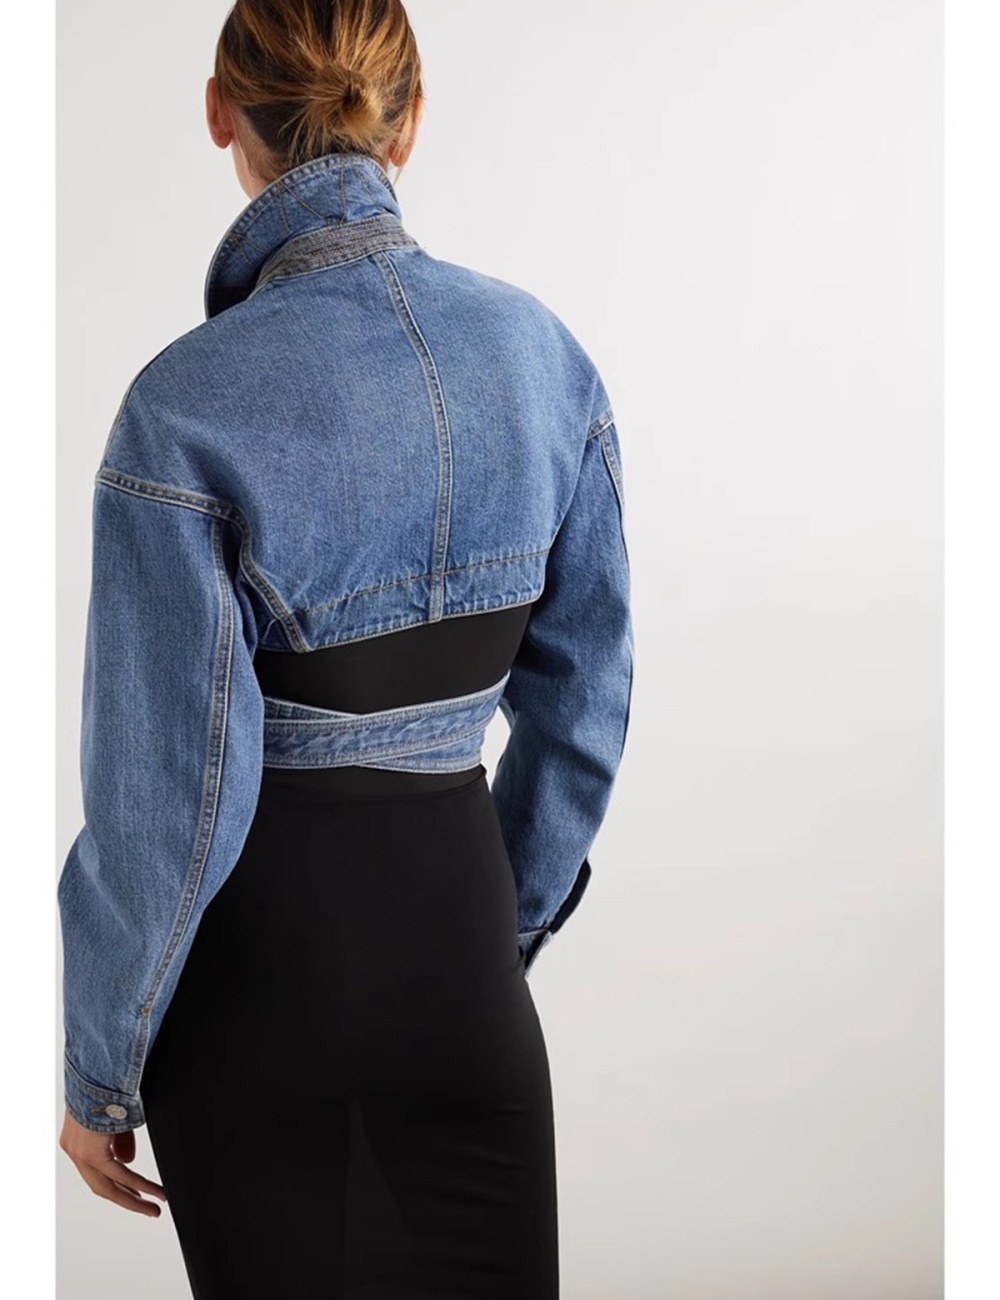 Frenum niche denim jacket hollow spring short tops for women